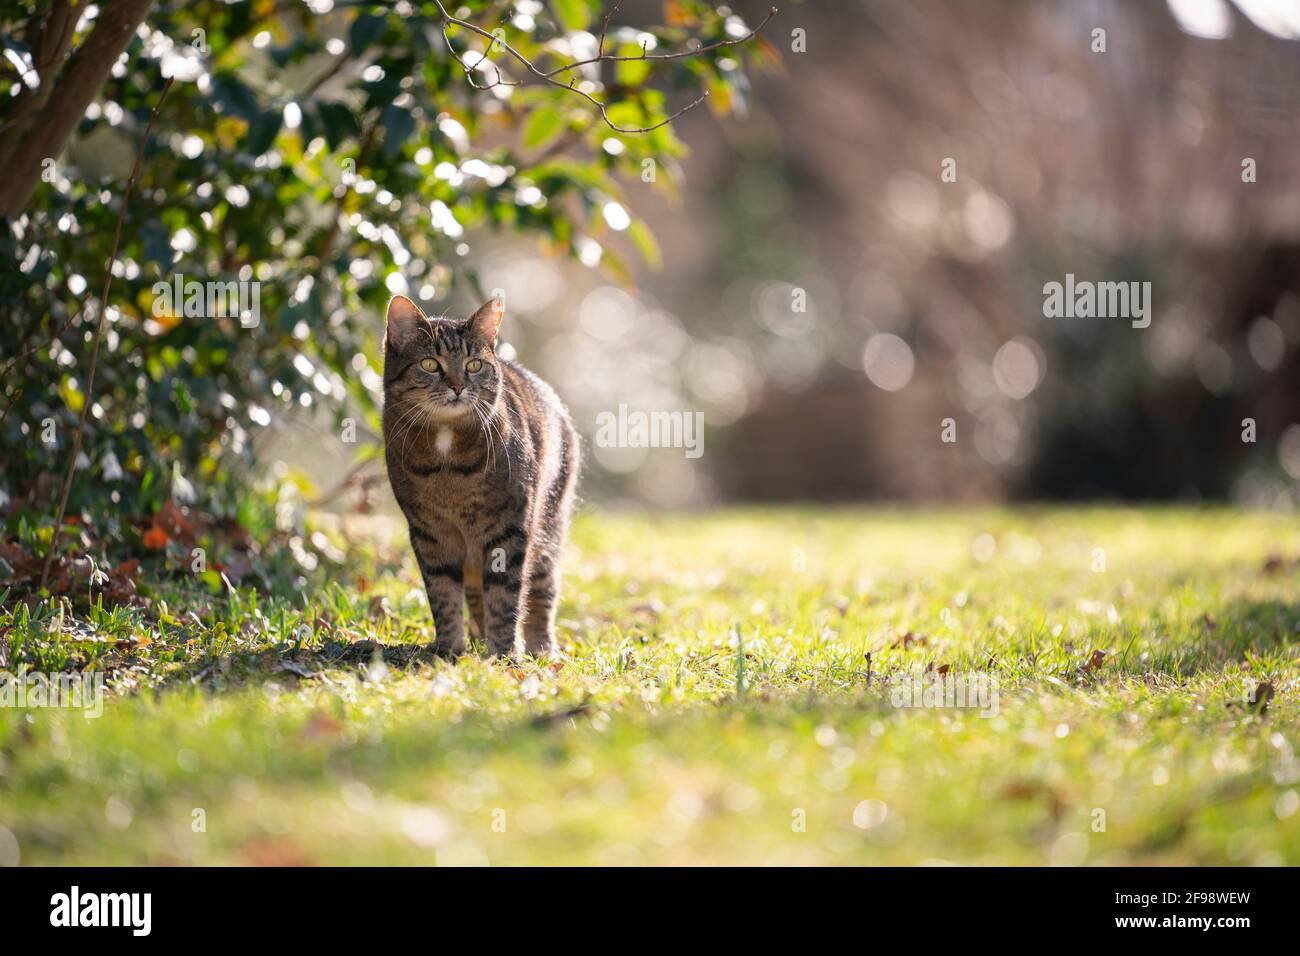 curioso gato tabby de pie en pradera en la luz del sol observando el jardín Foto de stock